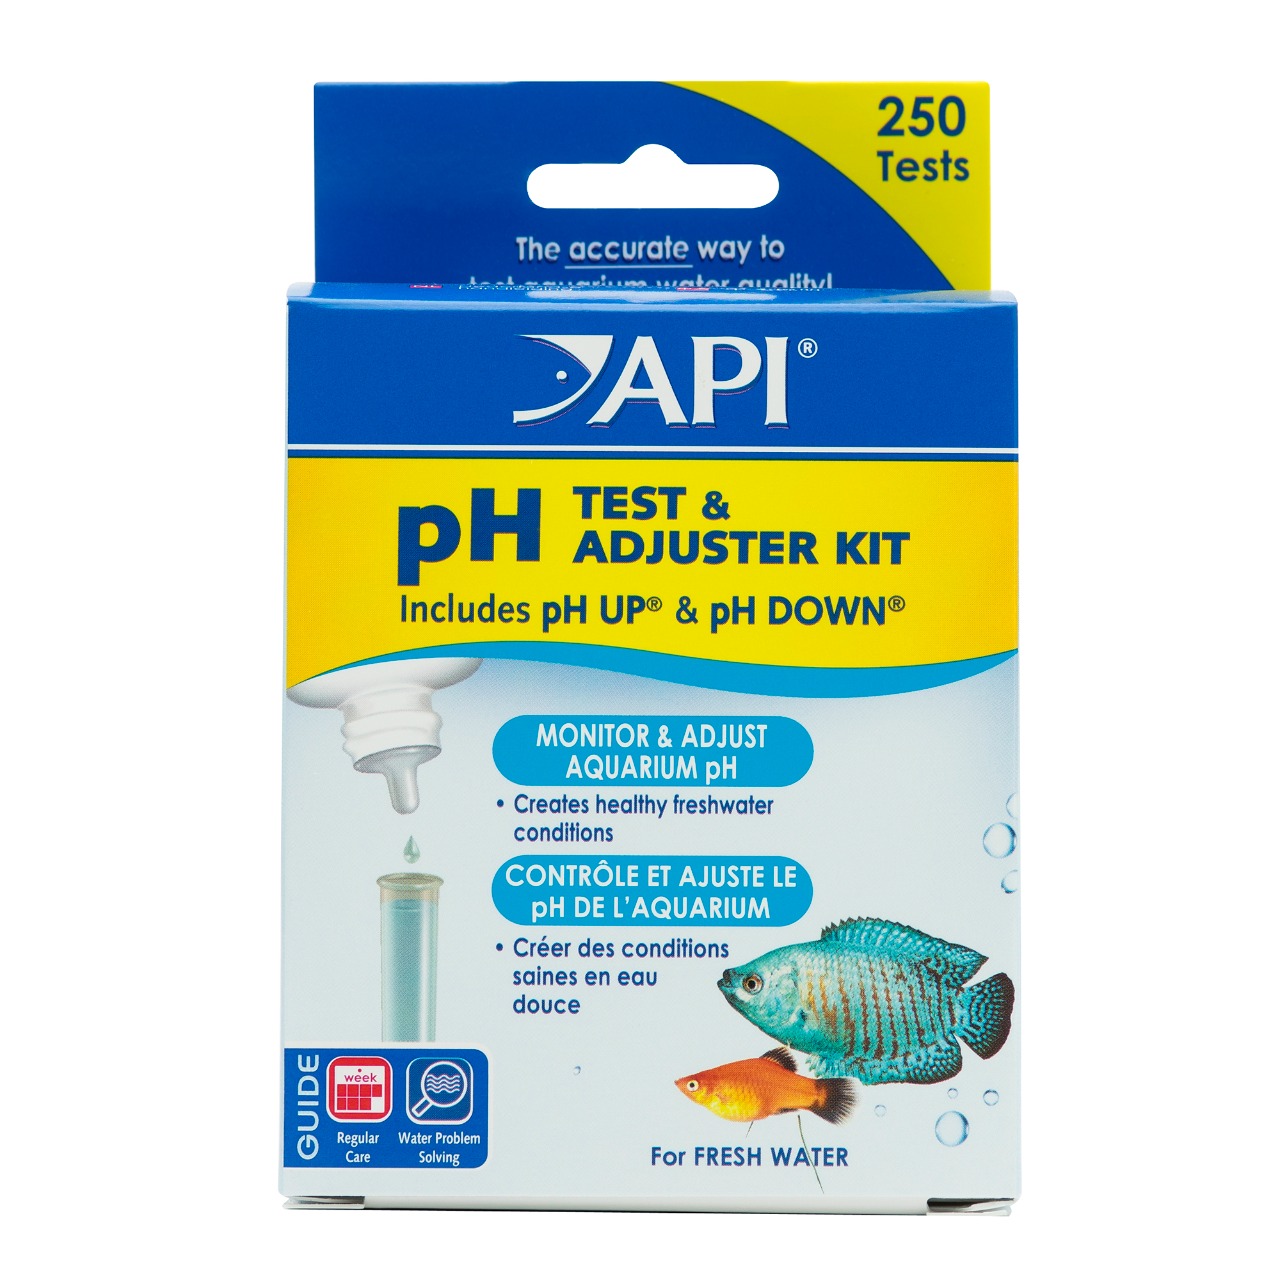 API PH TEST & ADJUSTER KIT (teste pH e kit de ajuste)